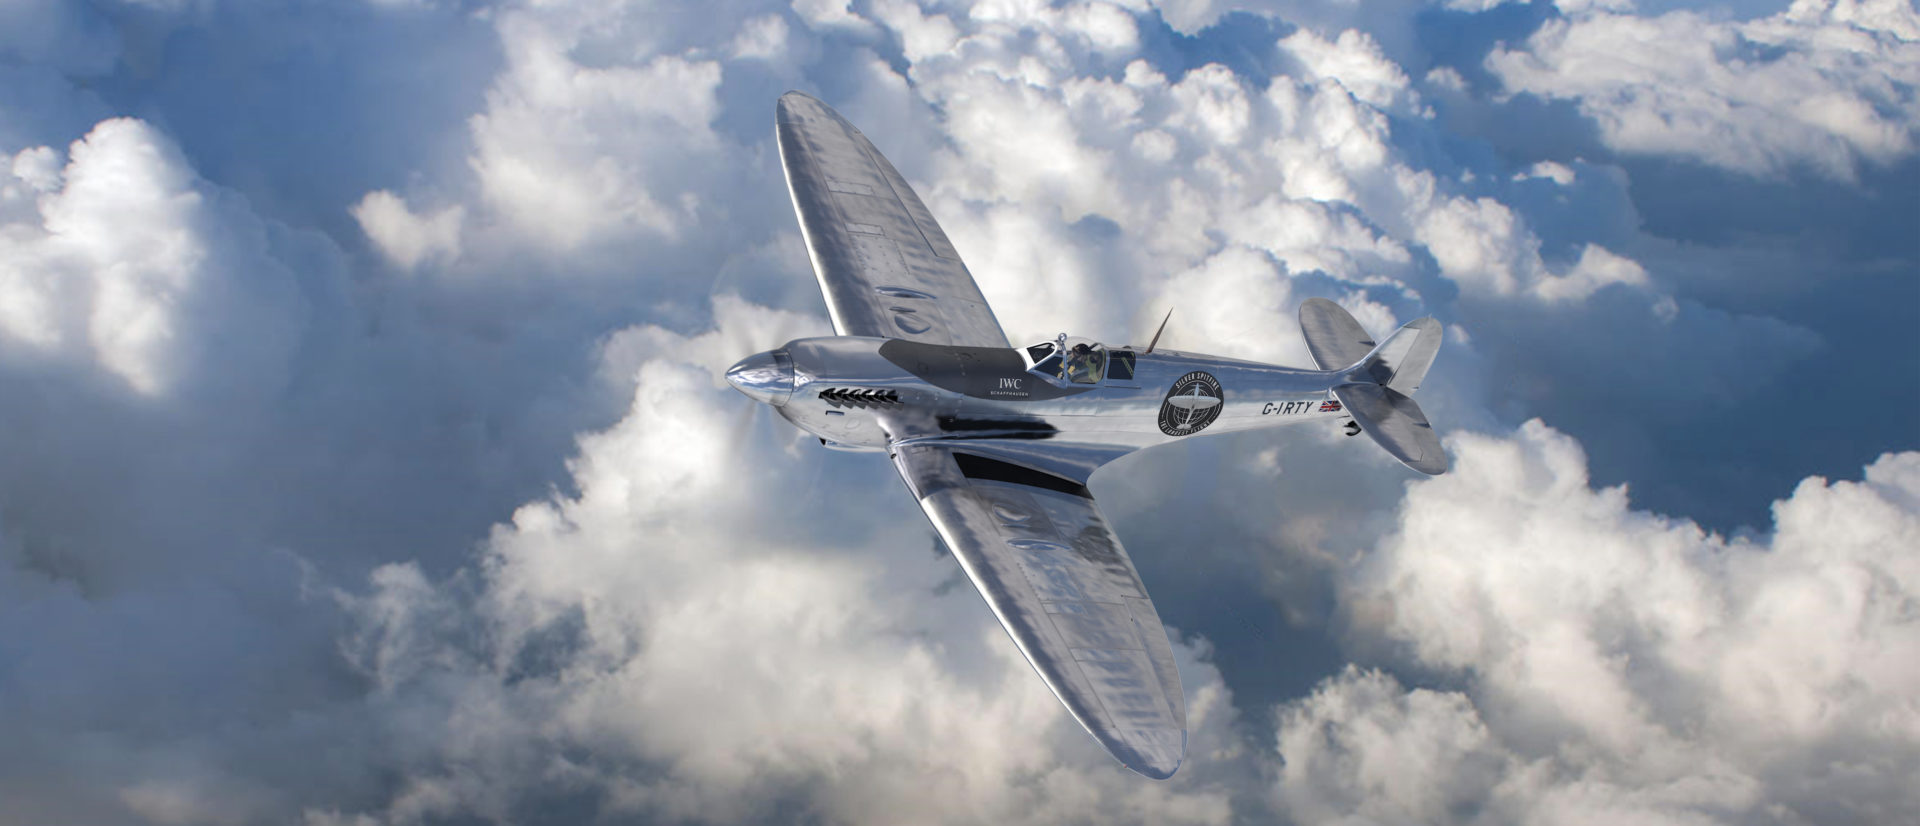 Silver Spitfire in mid flight